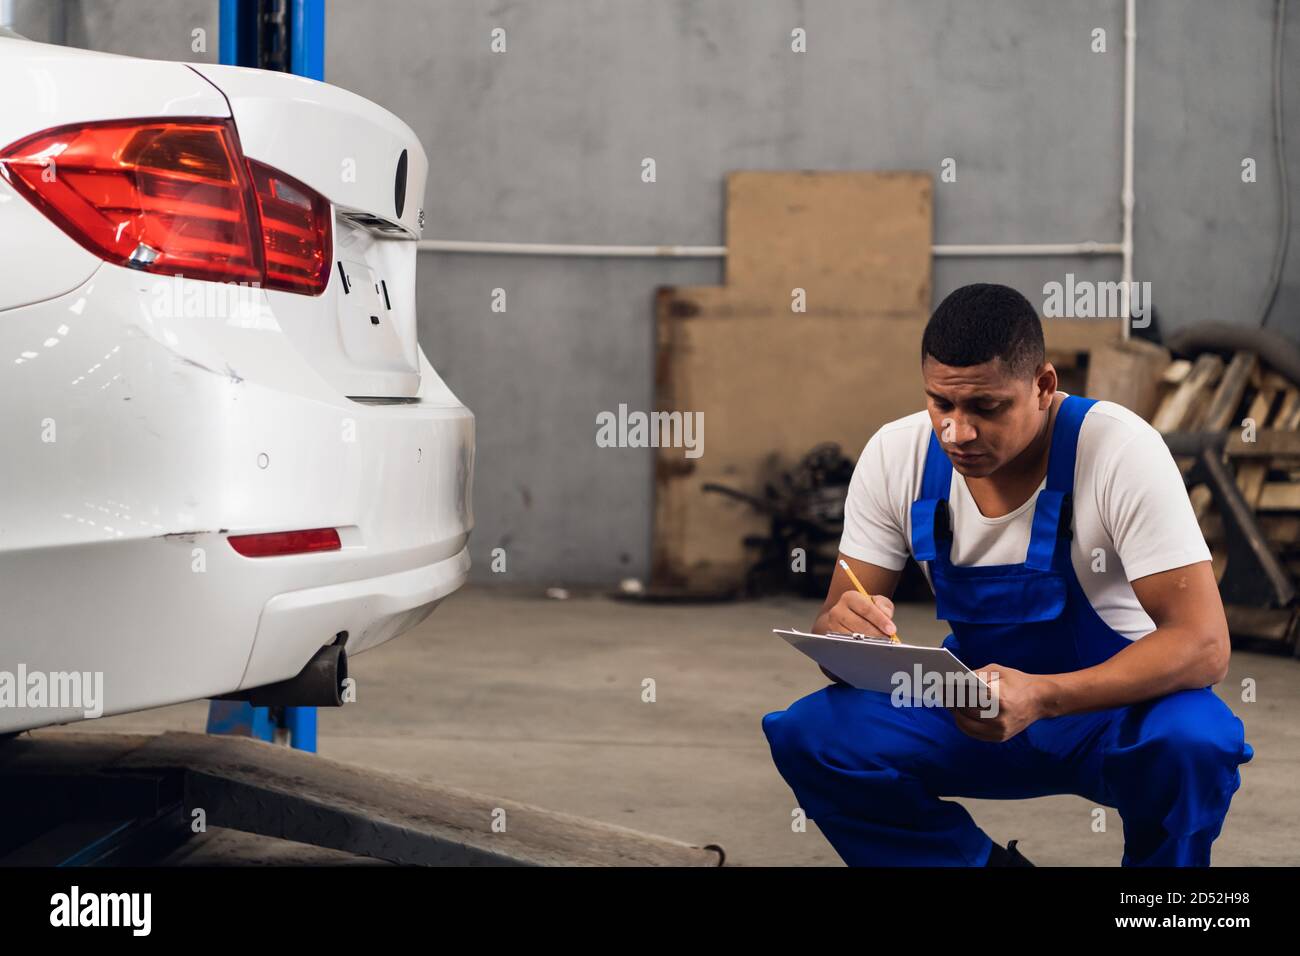 Ein Mechaniker in Arbeitskleidung inspiziert ein Auto in einem Werkstatt  Stockfotografie - Alamy